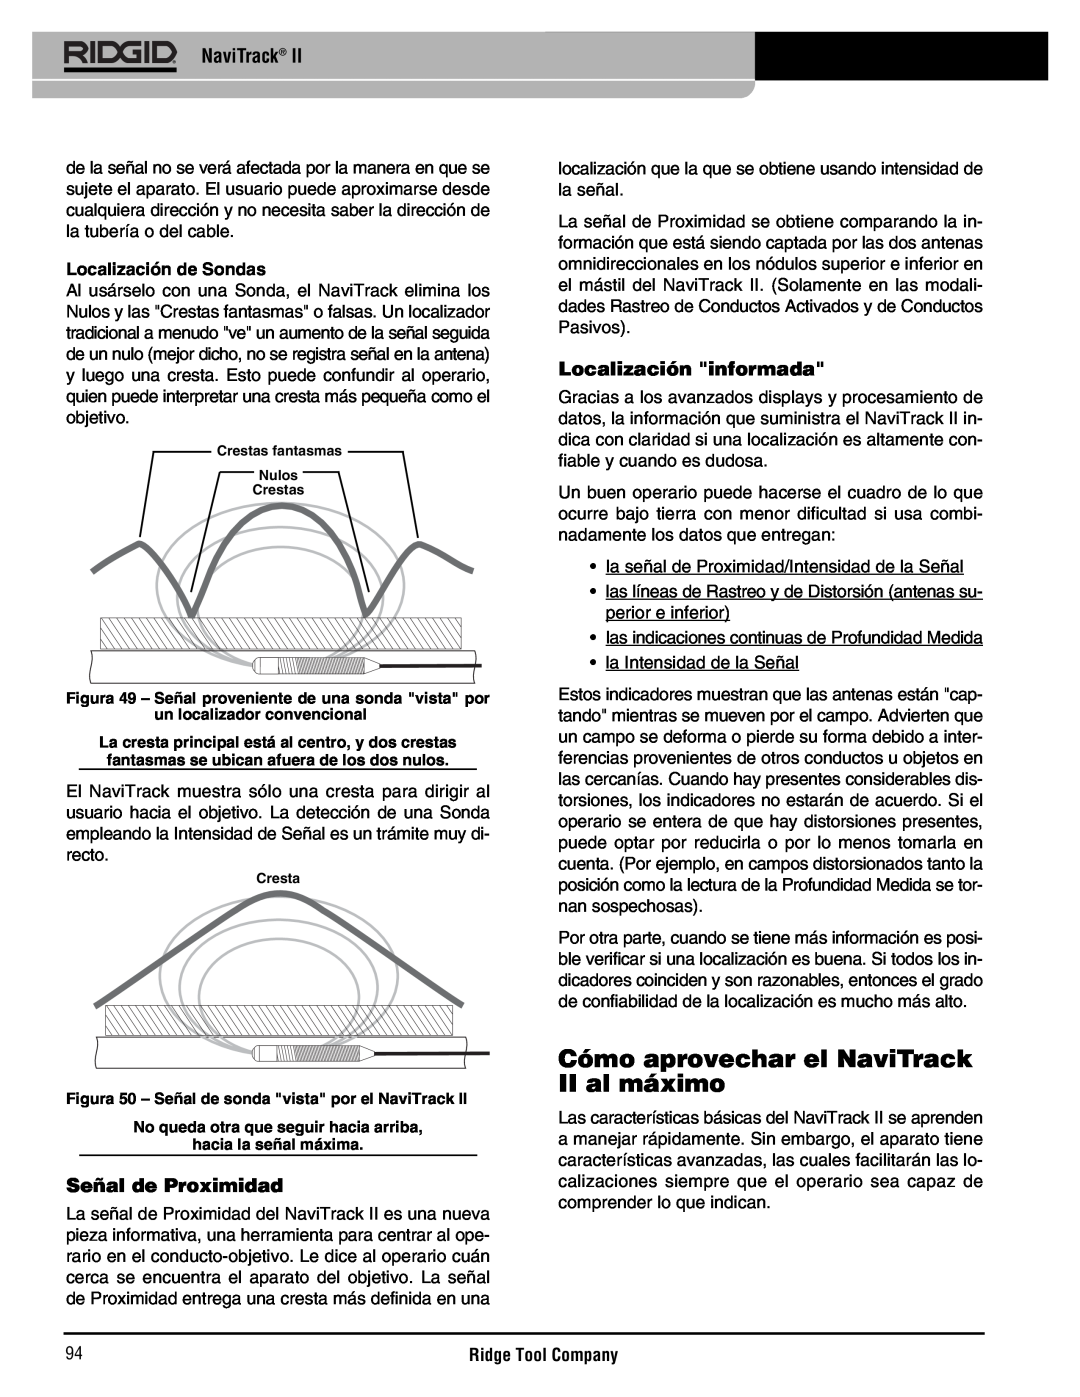 RIDGID Metal Detector manual Cómo aprovechar el NaviTrack II al máximo, Señal de Proximidad, Localización informada 